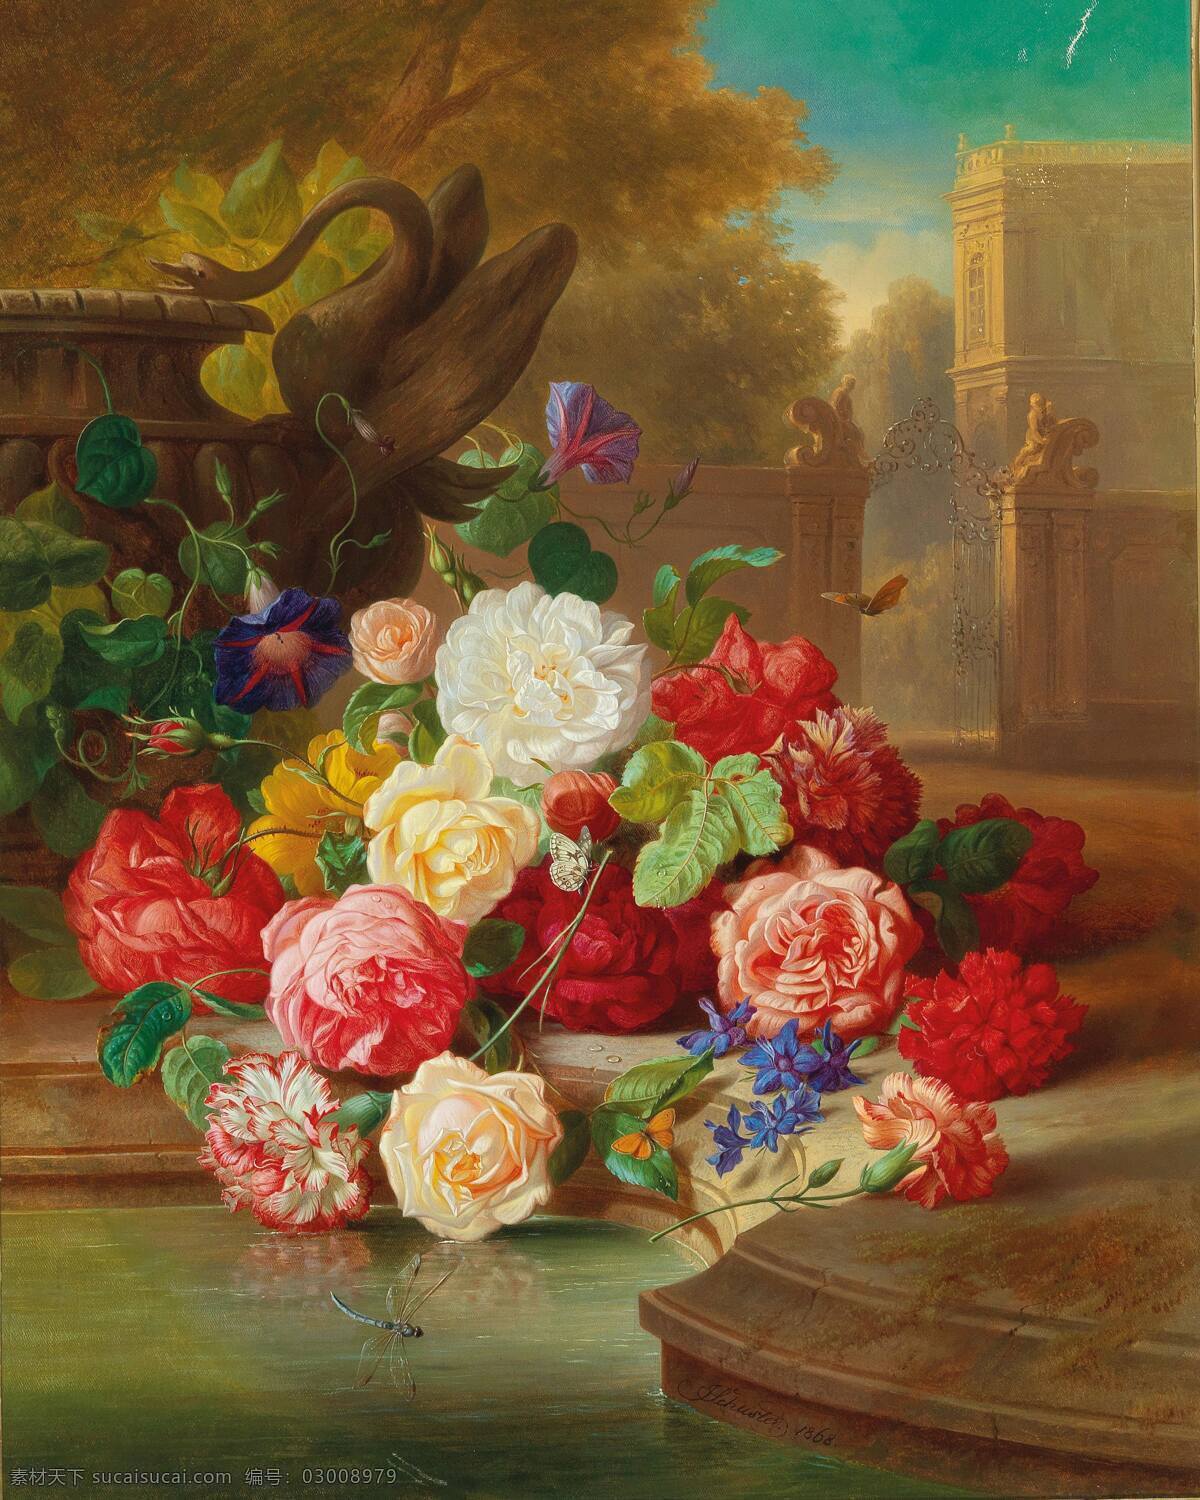 约瑟夫 舒斯特 作品 奥地利画家 施梅特林公园 采花 静物花卉 永恒之美 19世纪油画 油画 文化艺术 绘画书法